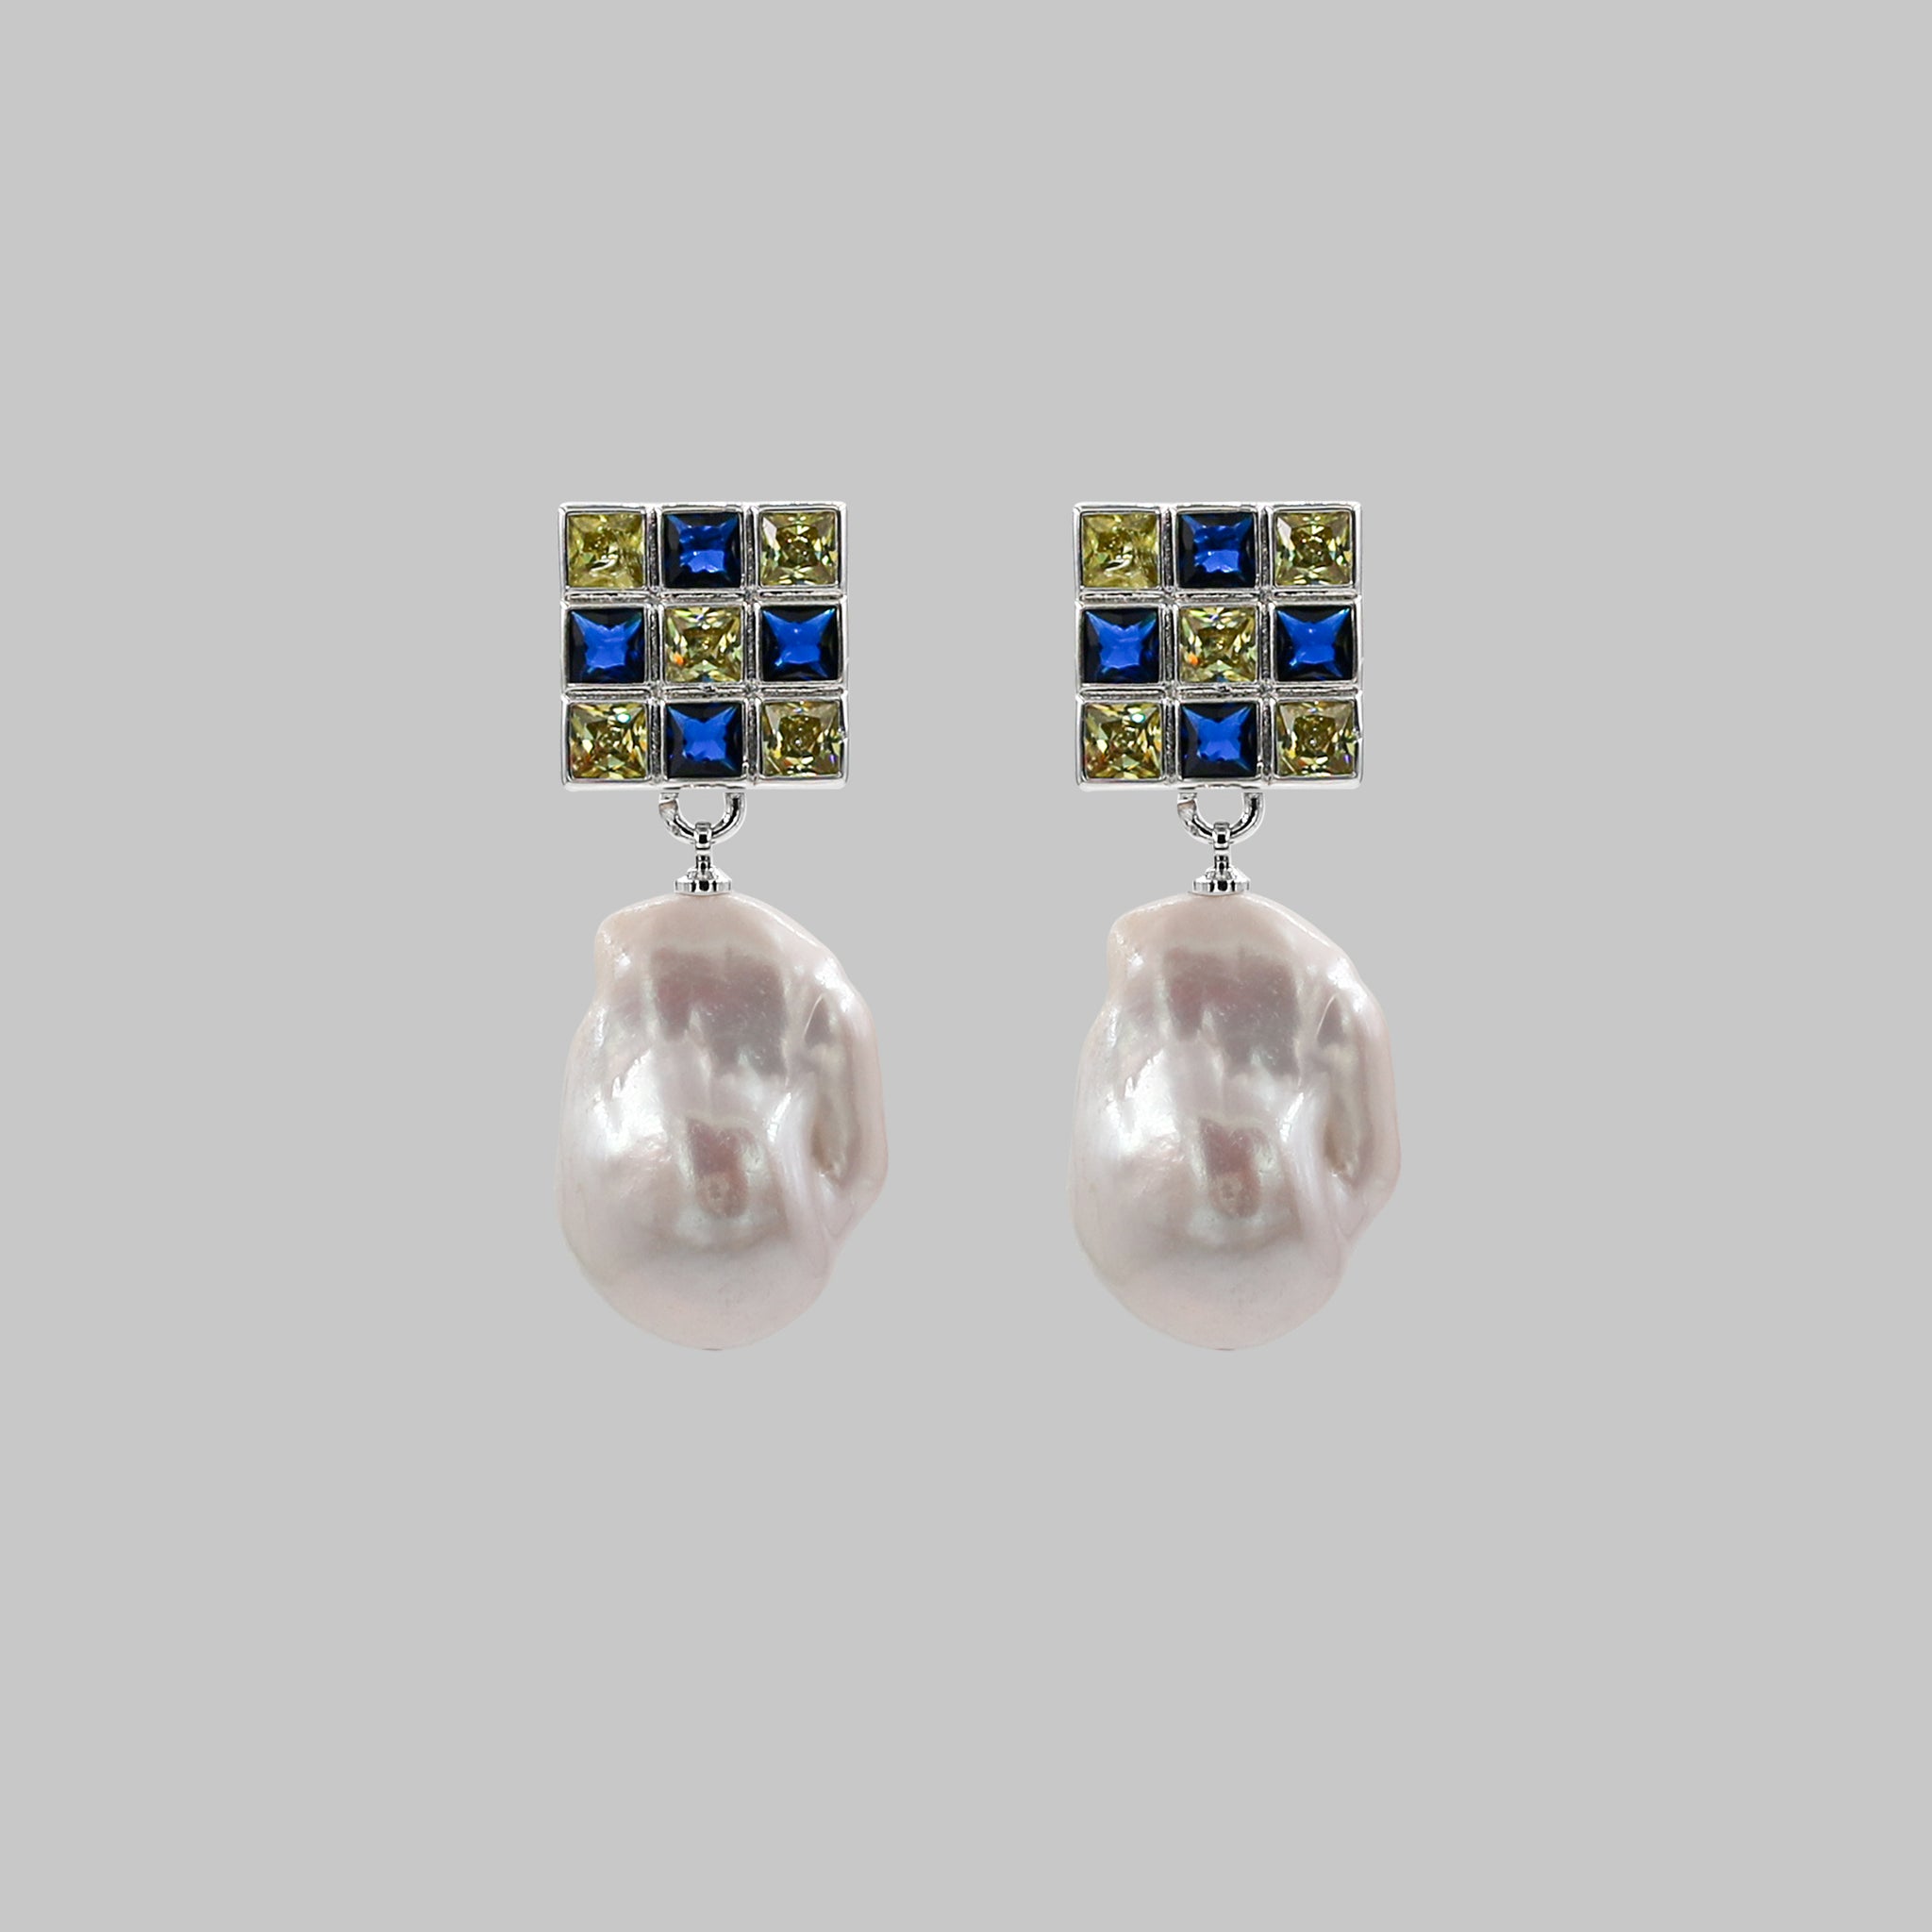 baroque pearl earring statement earrings womens earrings summer earrings blue lemon crystal  zircon stone